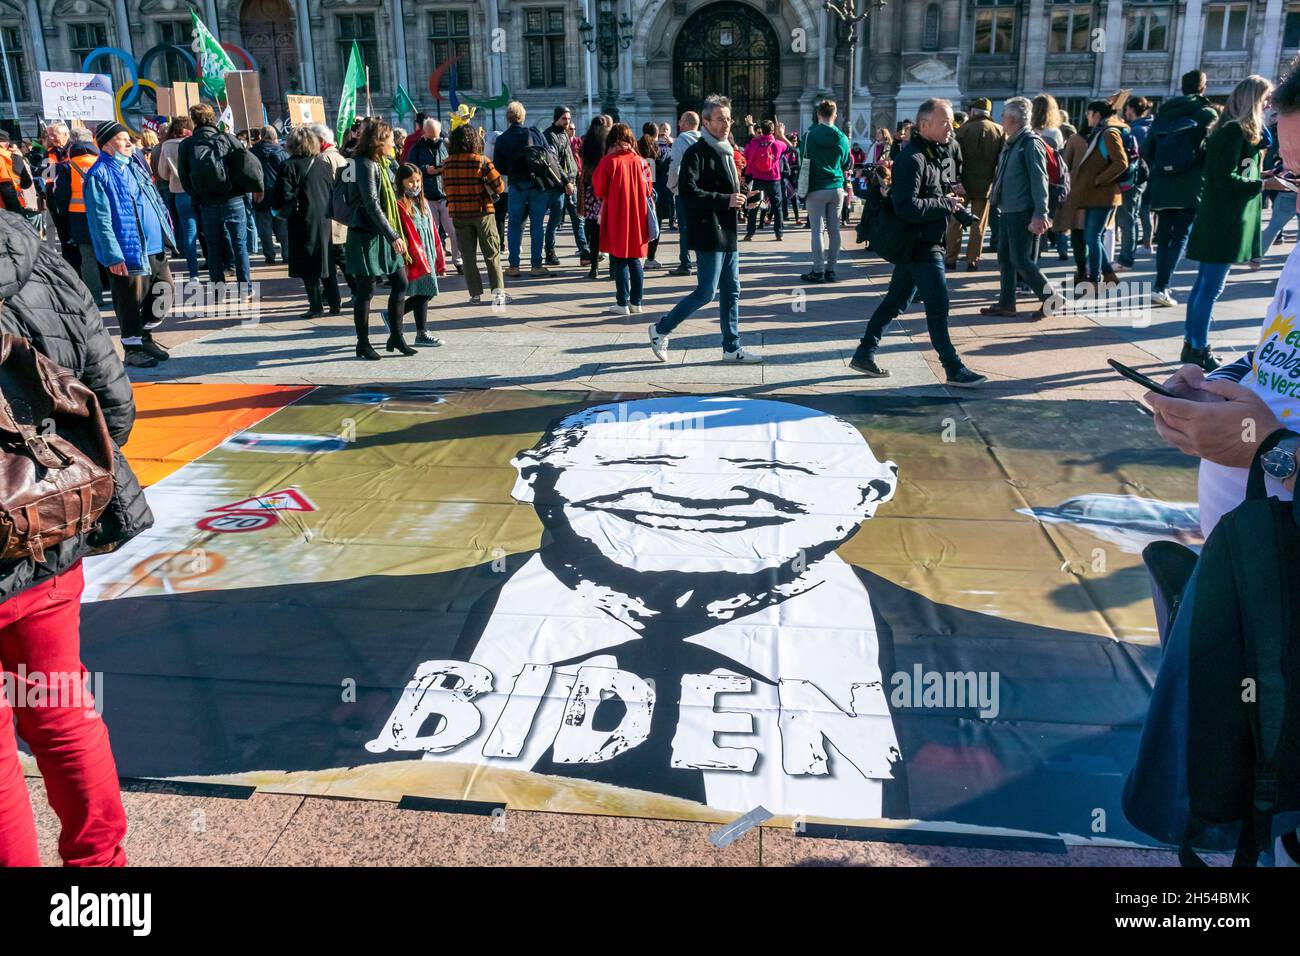 Paris, France, ONG françaises, manifestation contre la crise climatique, scène de protestation de grande foule, personnes tenant des pancartes de protestation, COP 26, Biden, leaders mondiaux, mouvement environnemental français Banque D'Images